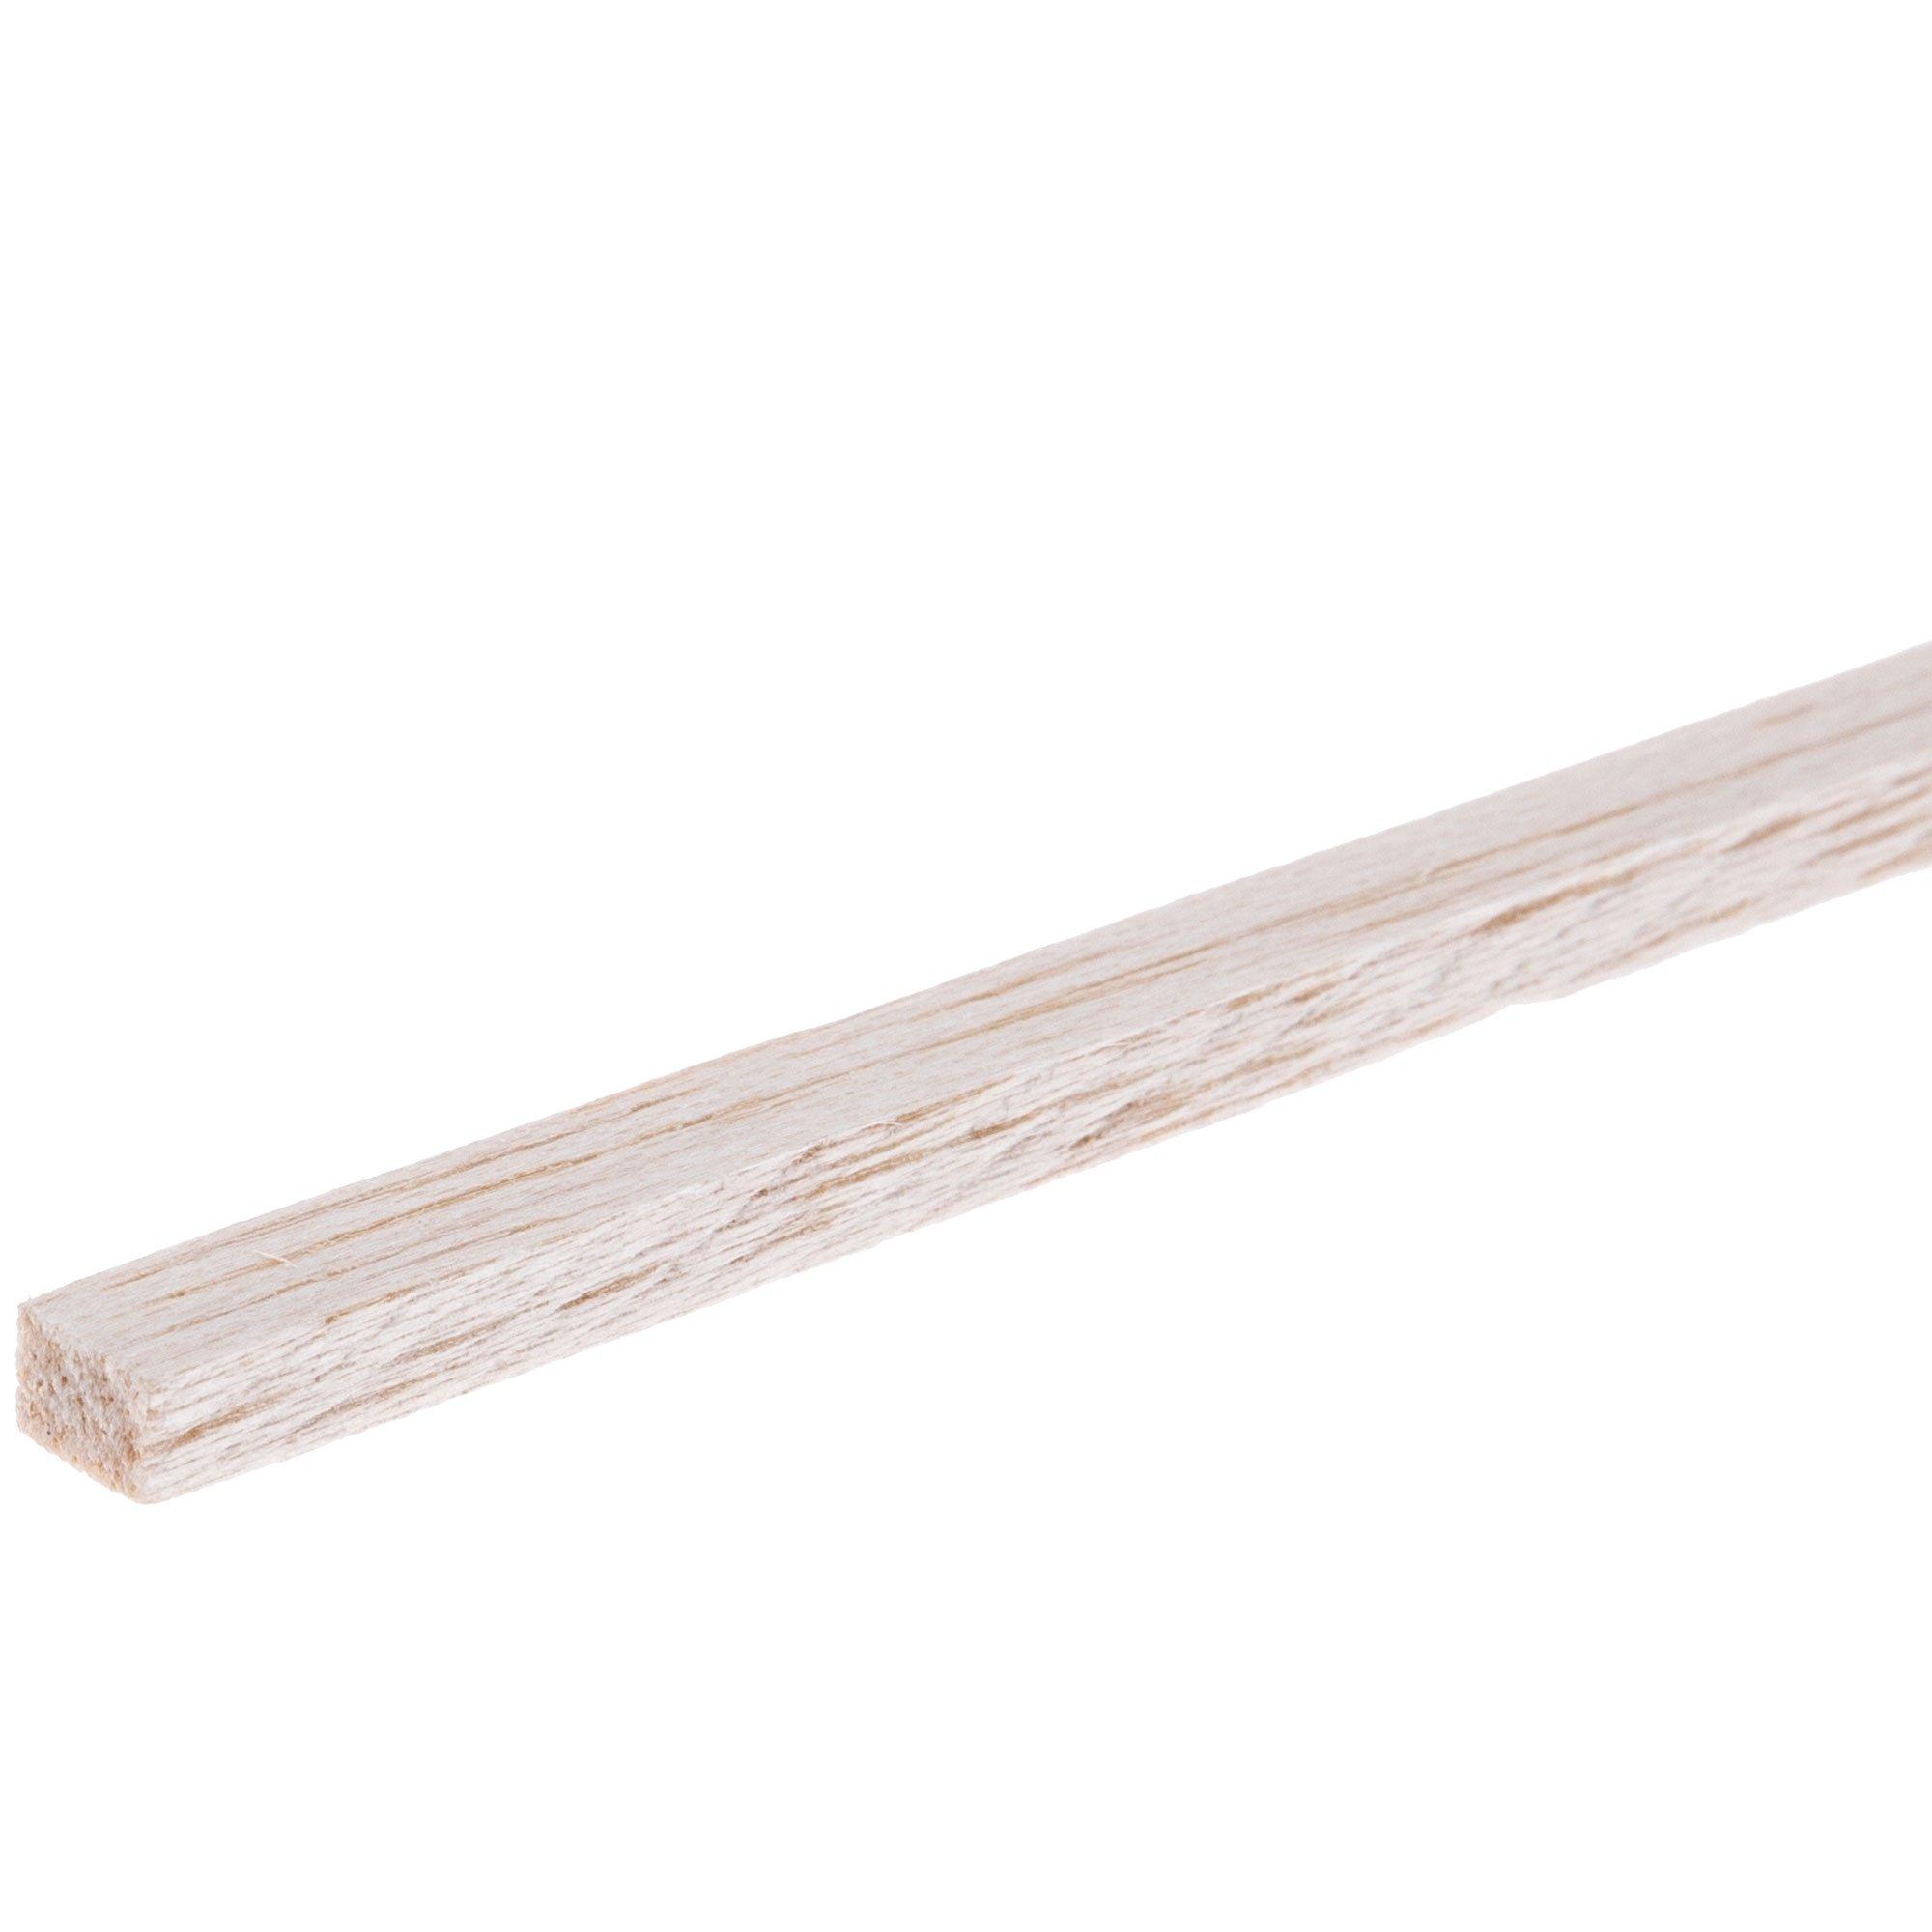 Balsa Wood Strips (1/8 x 3/8 x 36) (W72496)